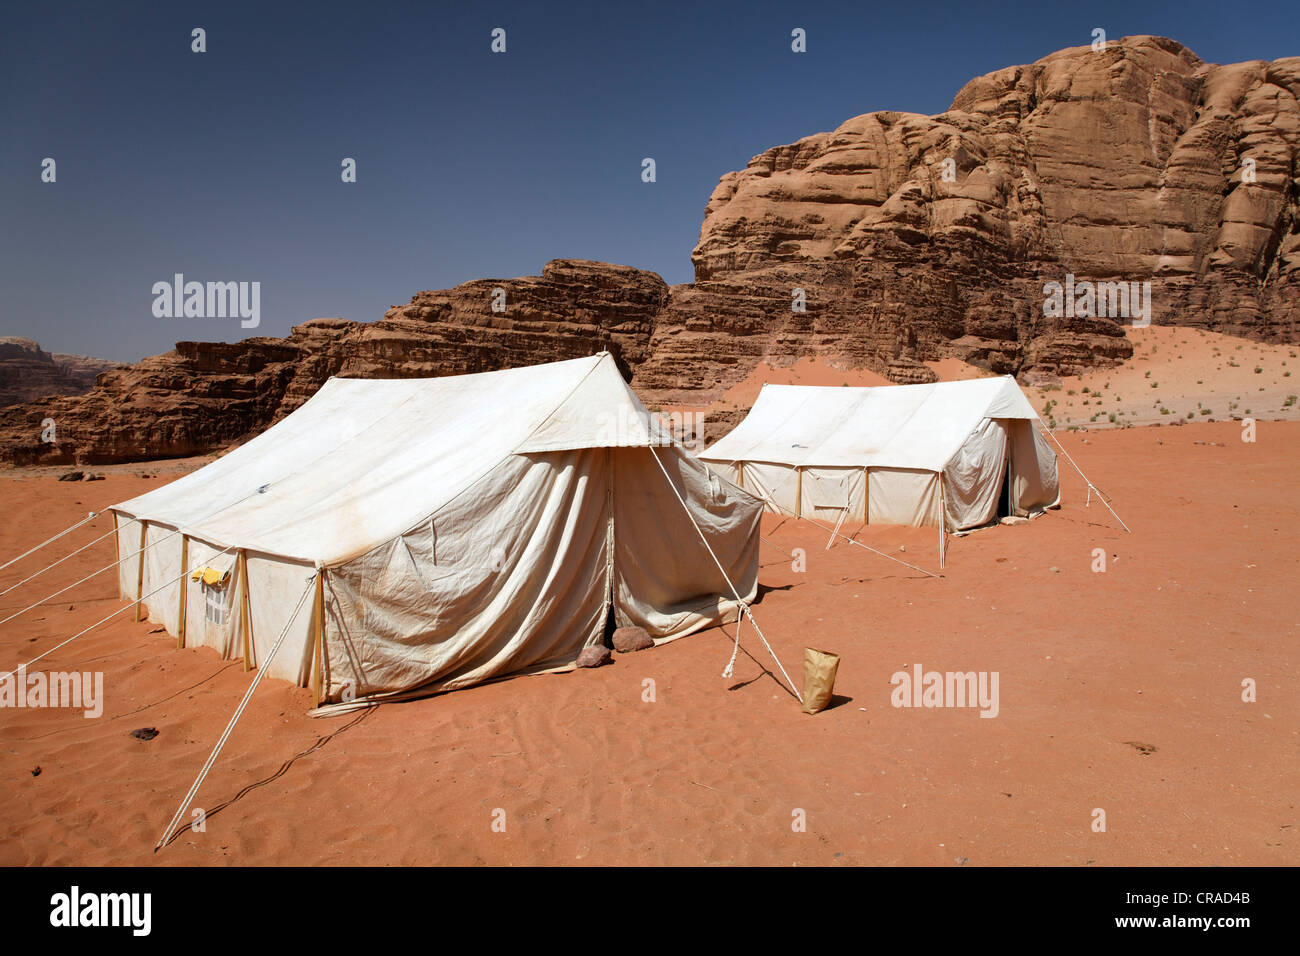 Camp pour les touristes, tentes, montagnes, désert, nature préservée, Wadi Rum, Royaume hachémite de Jordanie, Moyen-Orient, Asie Banque D'Images